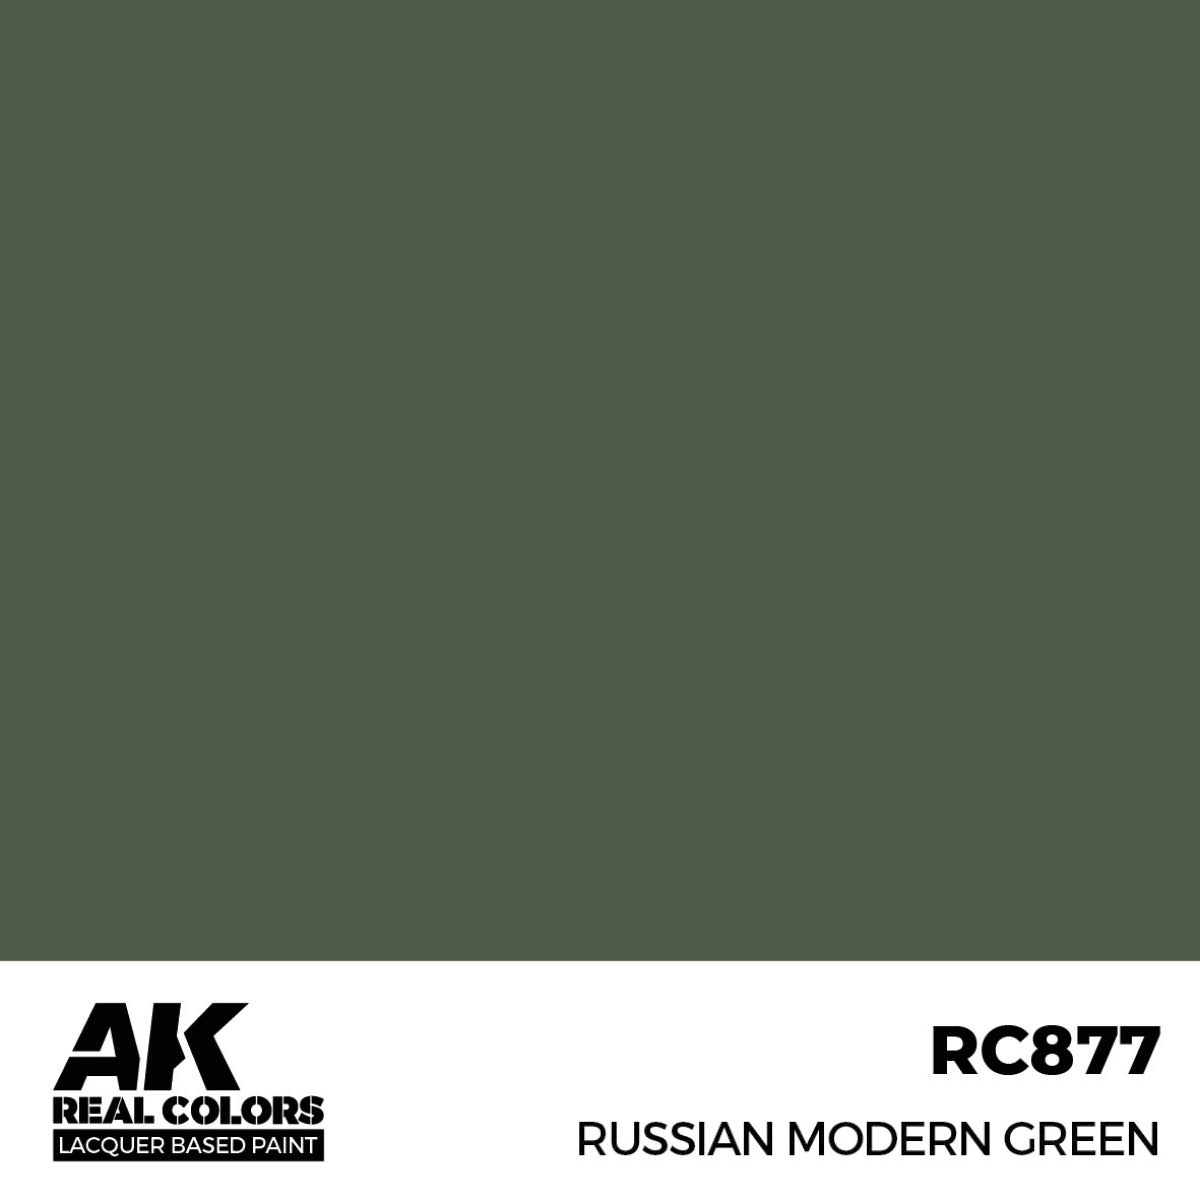 Russian Modern Green